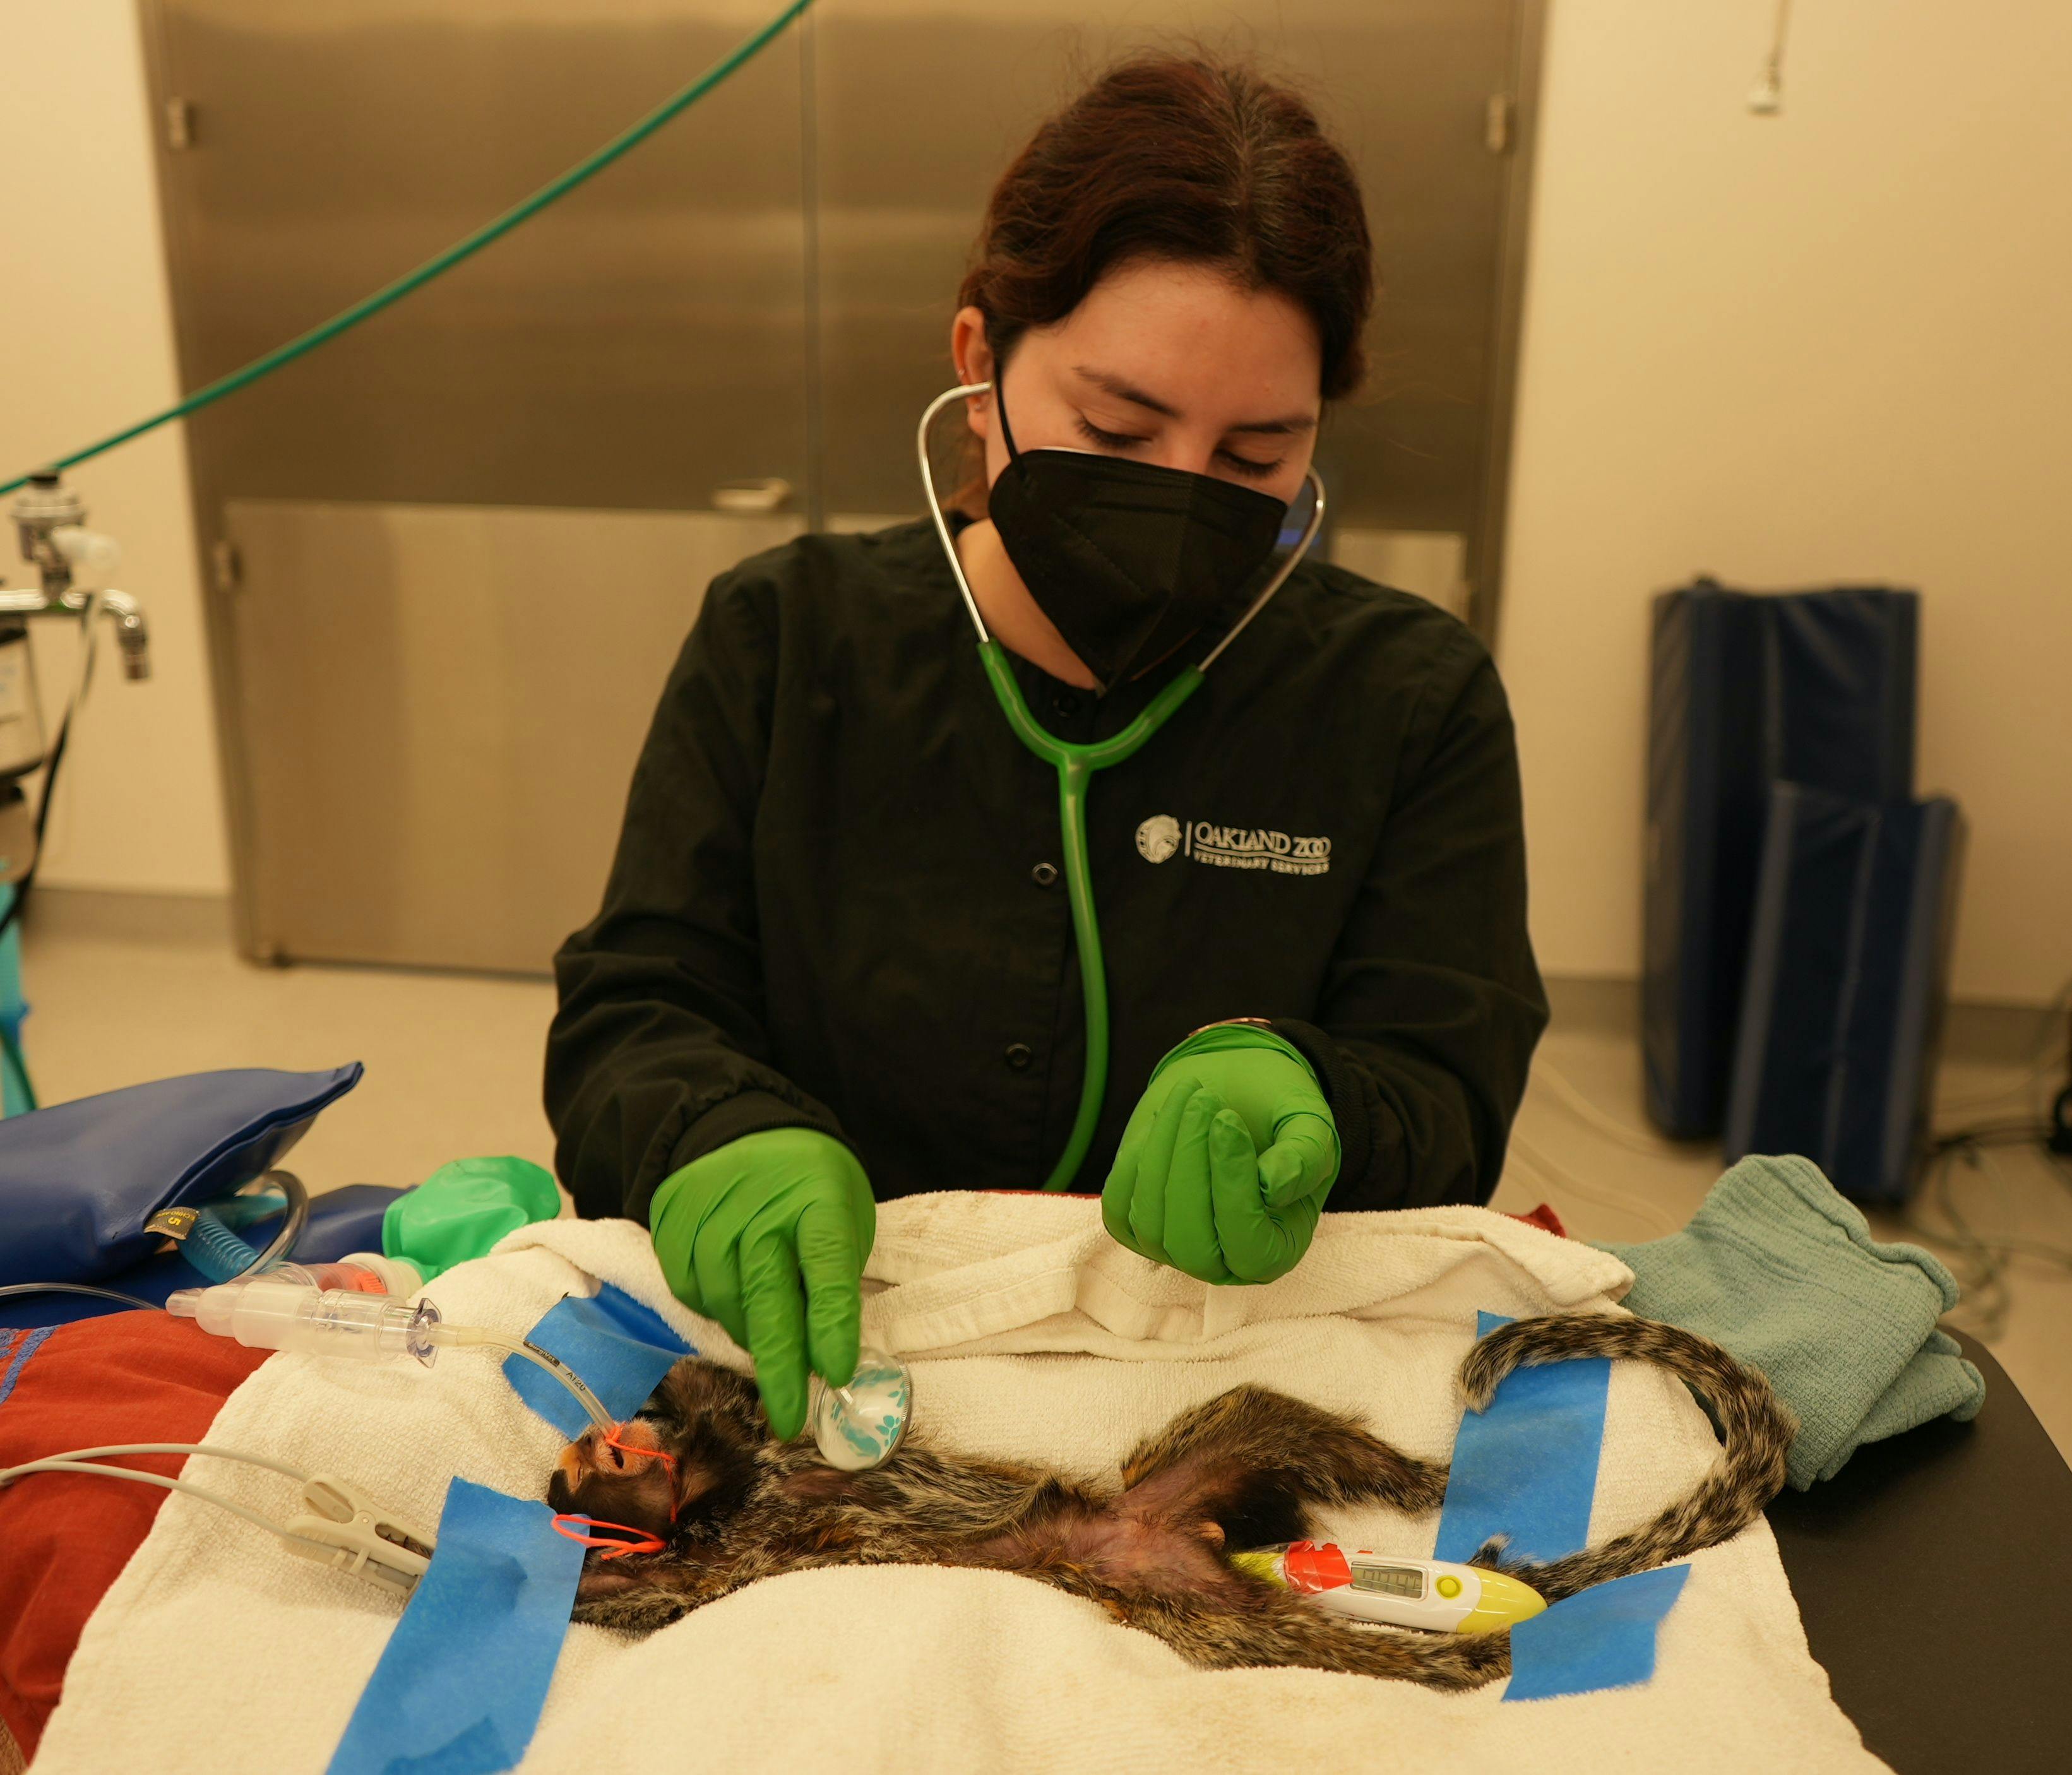 Estrela being examined at the Oakland Zoo Veterinary Hospital (Image courtesy of Oakland Zoo)